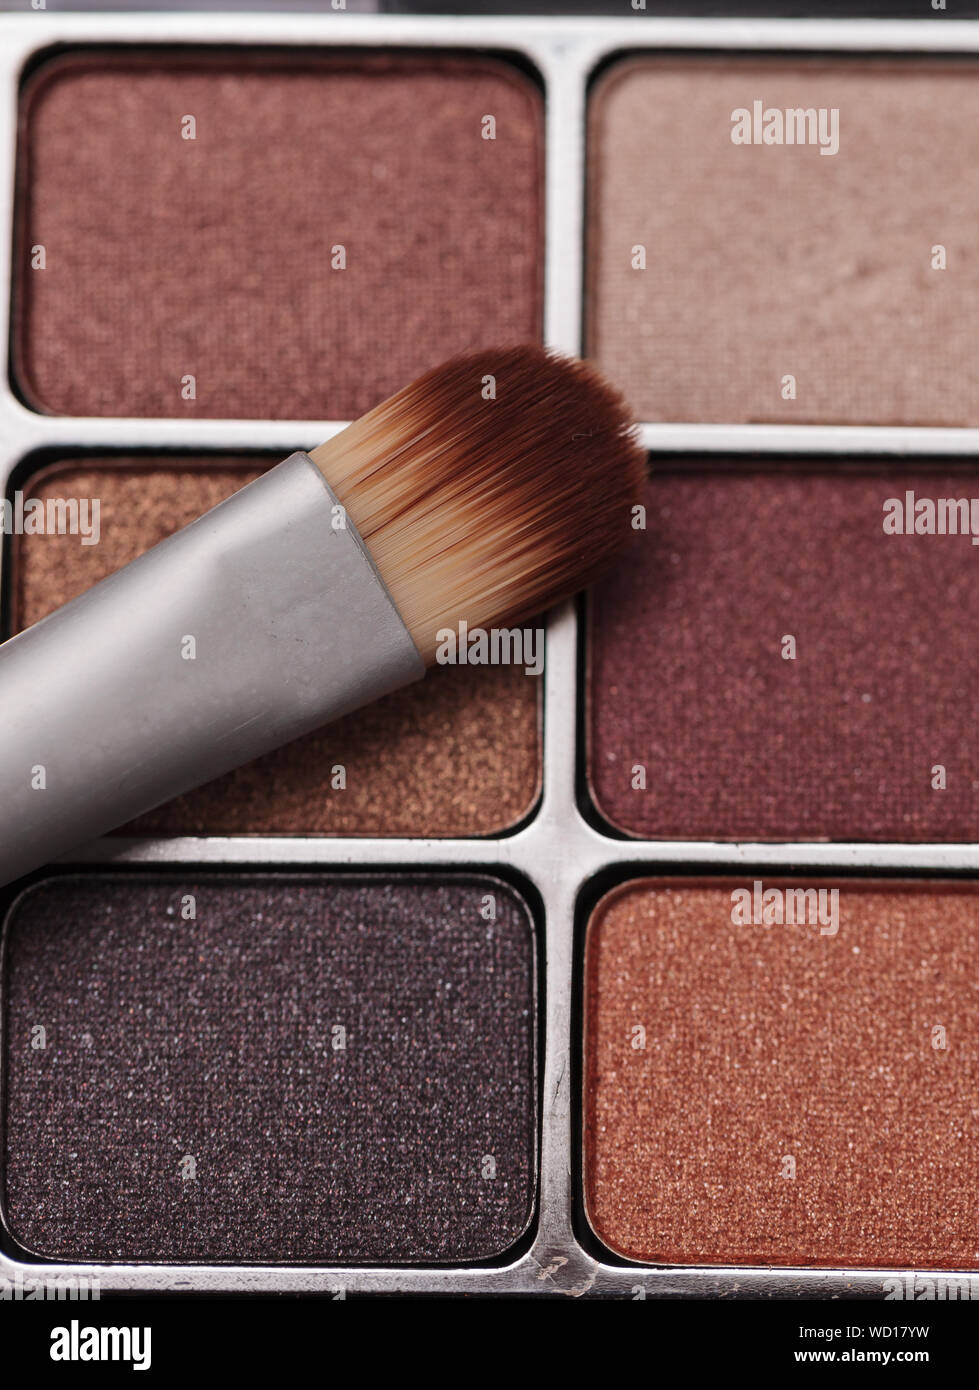 Close-up de producto de belleza con brocha de maquillaje Foto de stock